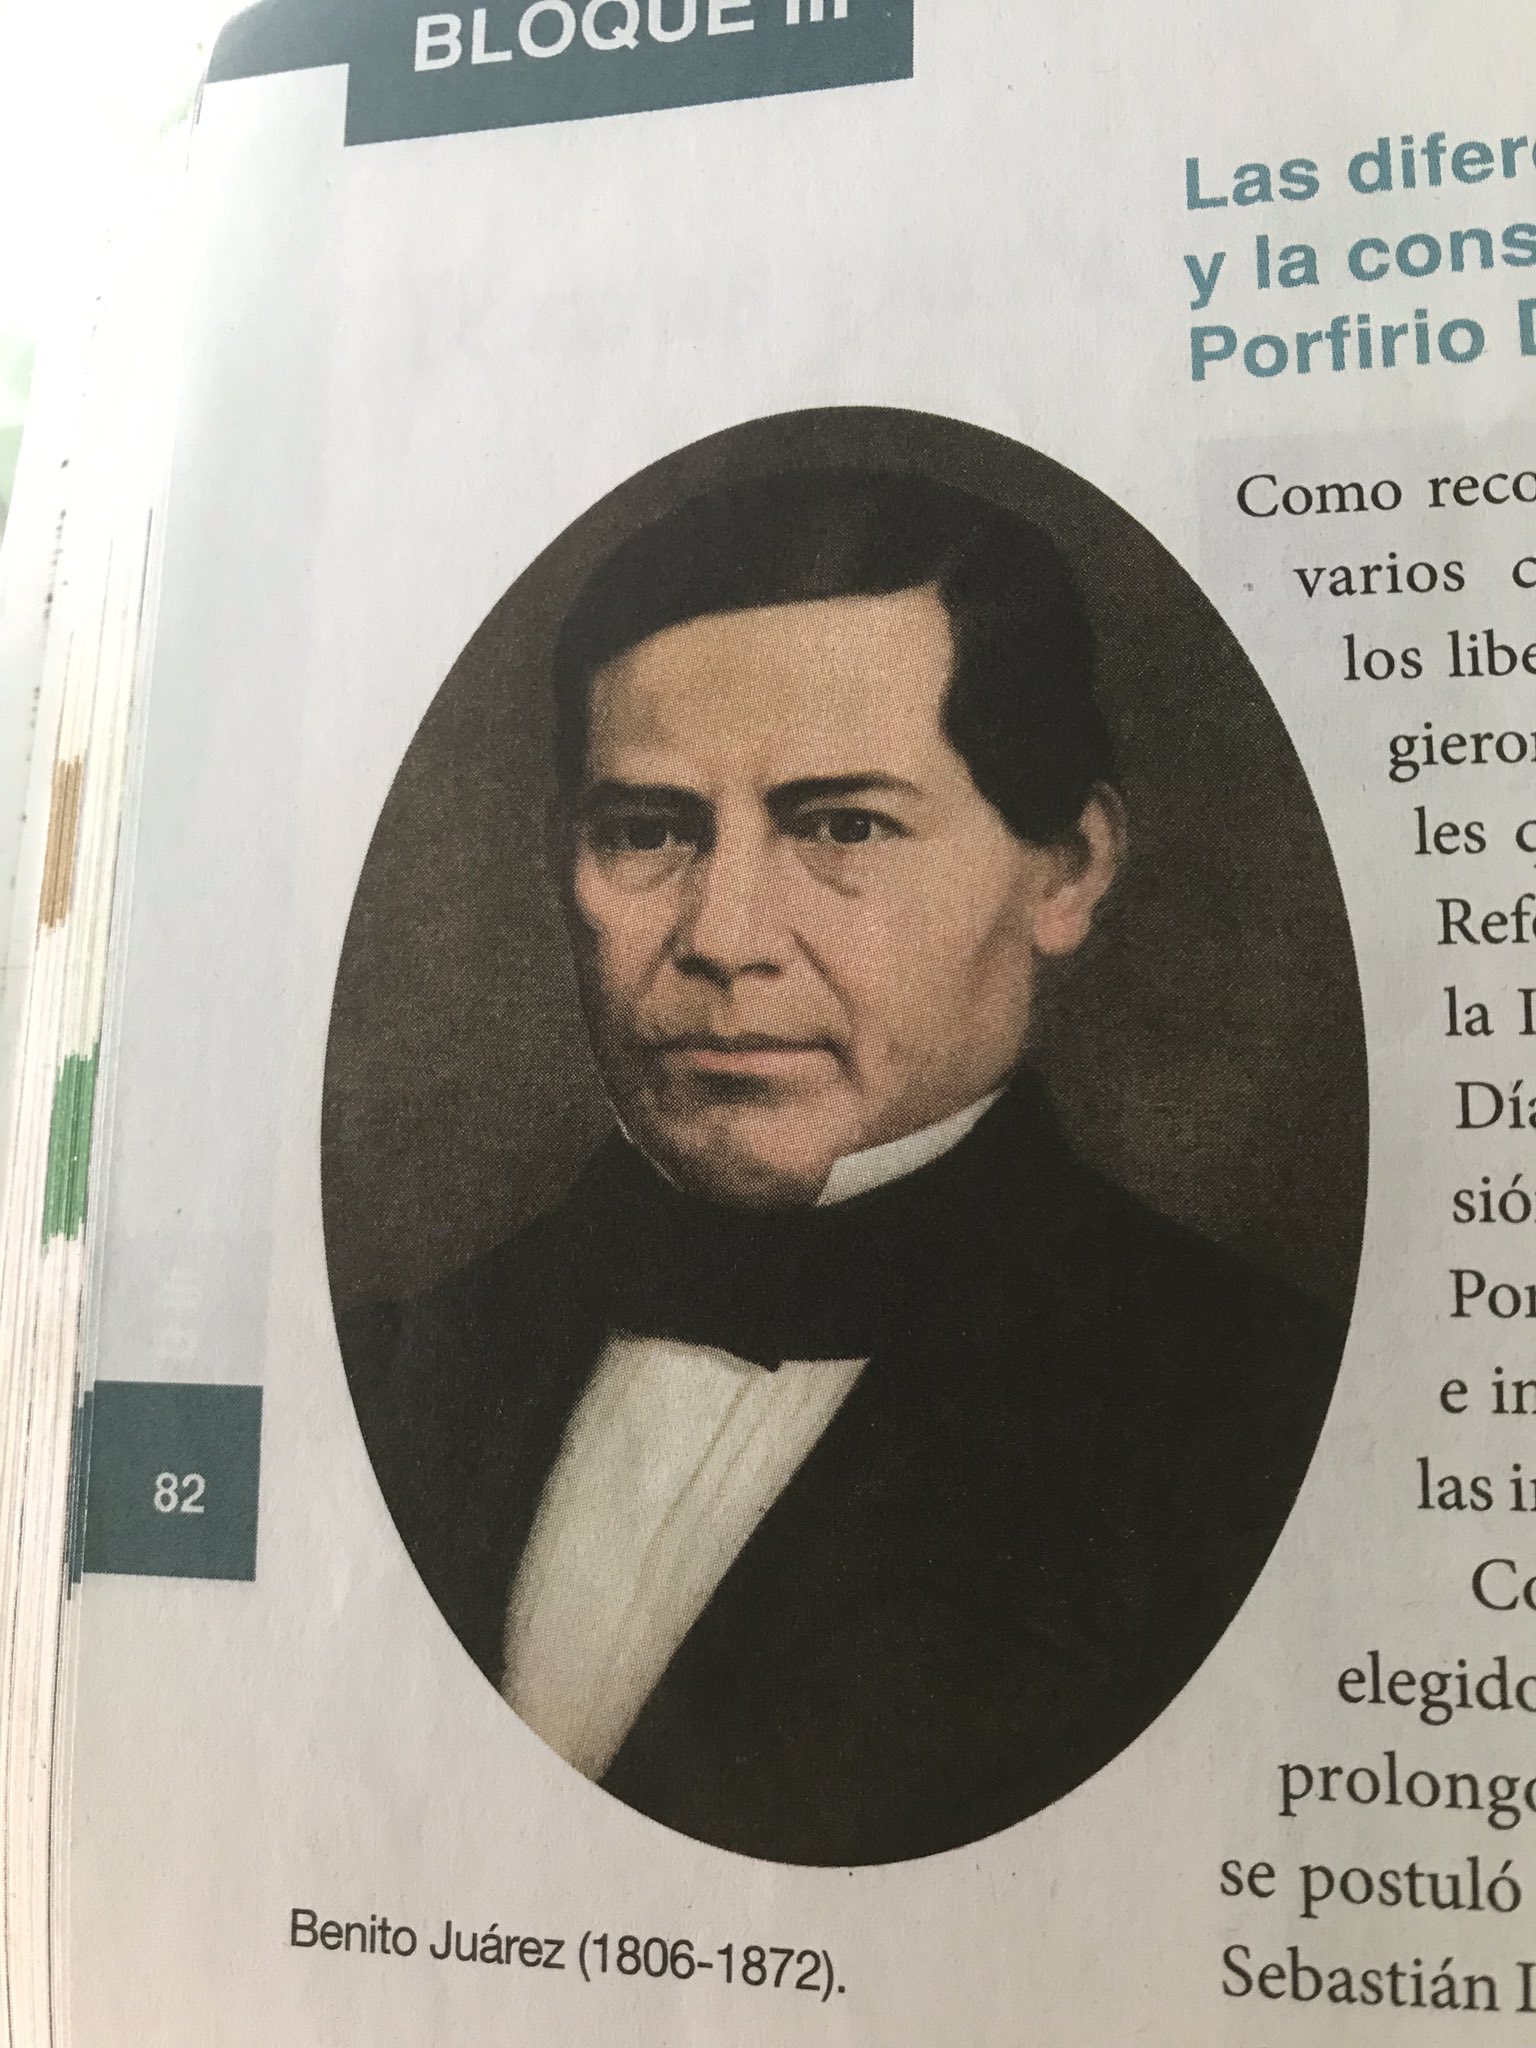 Su figura aparece tanto en libros de texto escolares en la portada como en billetes mexicanos que siguen en circulación
Foto: Tw/@Hugo_DeAvila